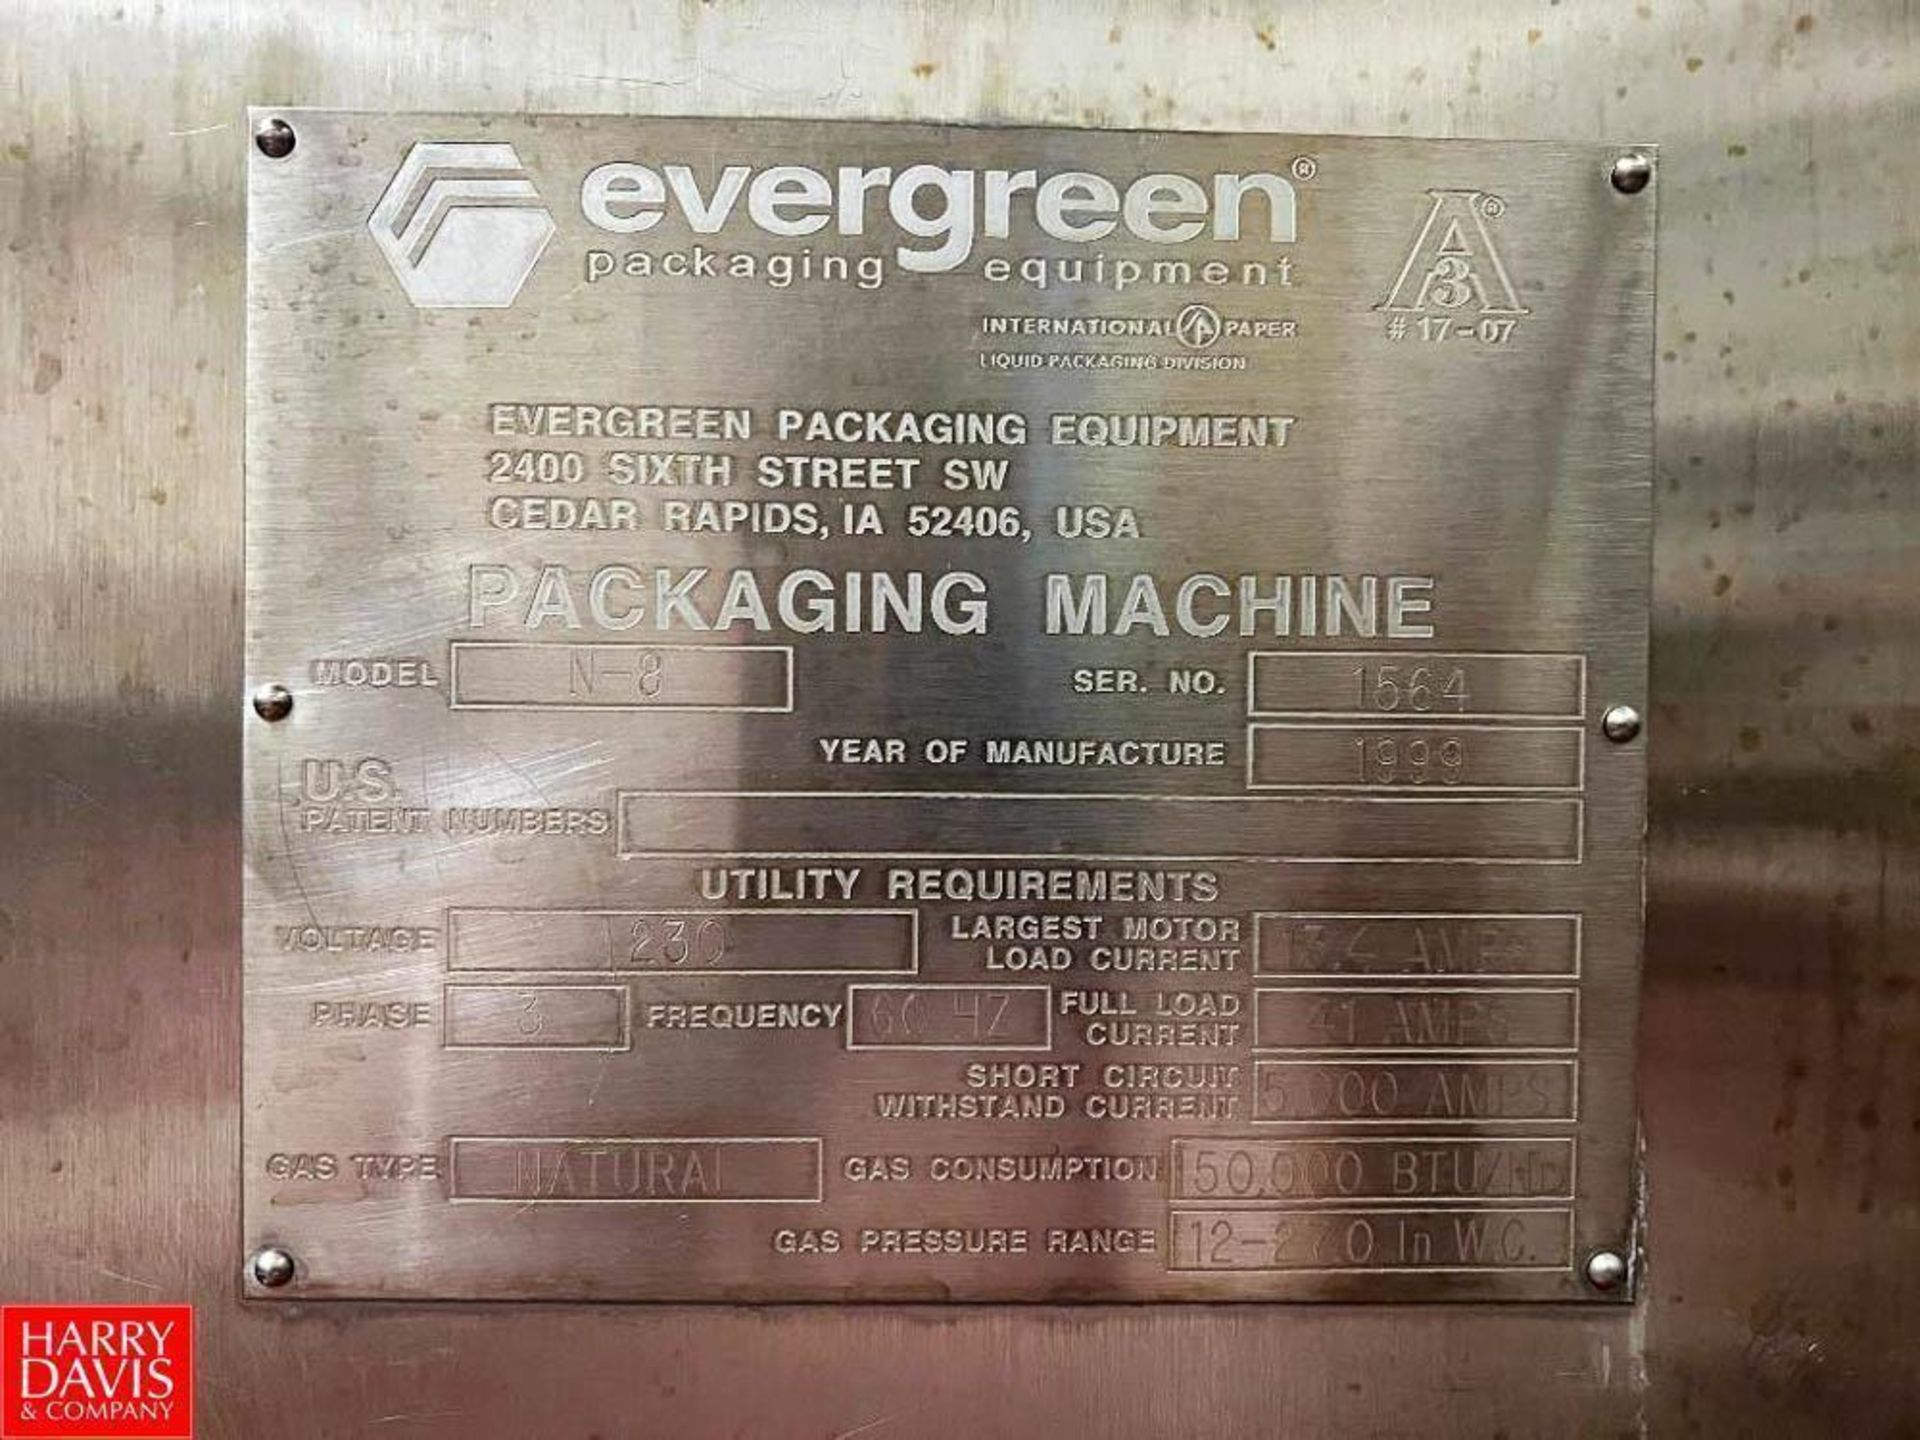 Evergreen Packaging Equipment Packaging Machine, Model: N-8, S/N: 1564 (Location: Dothan, AL) - Image 4 of 5